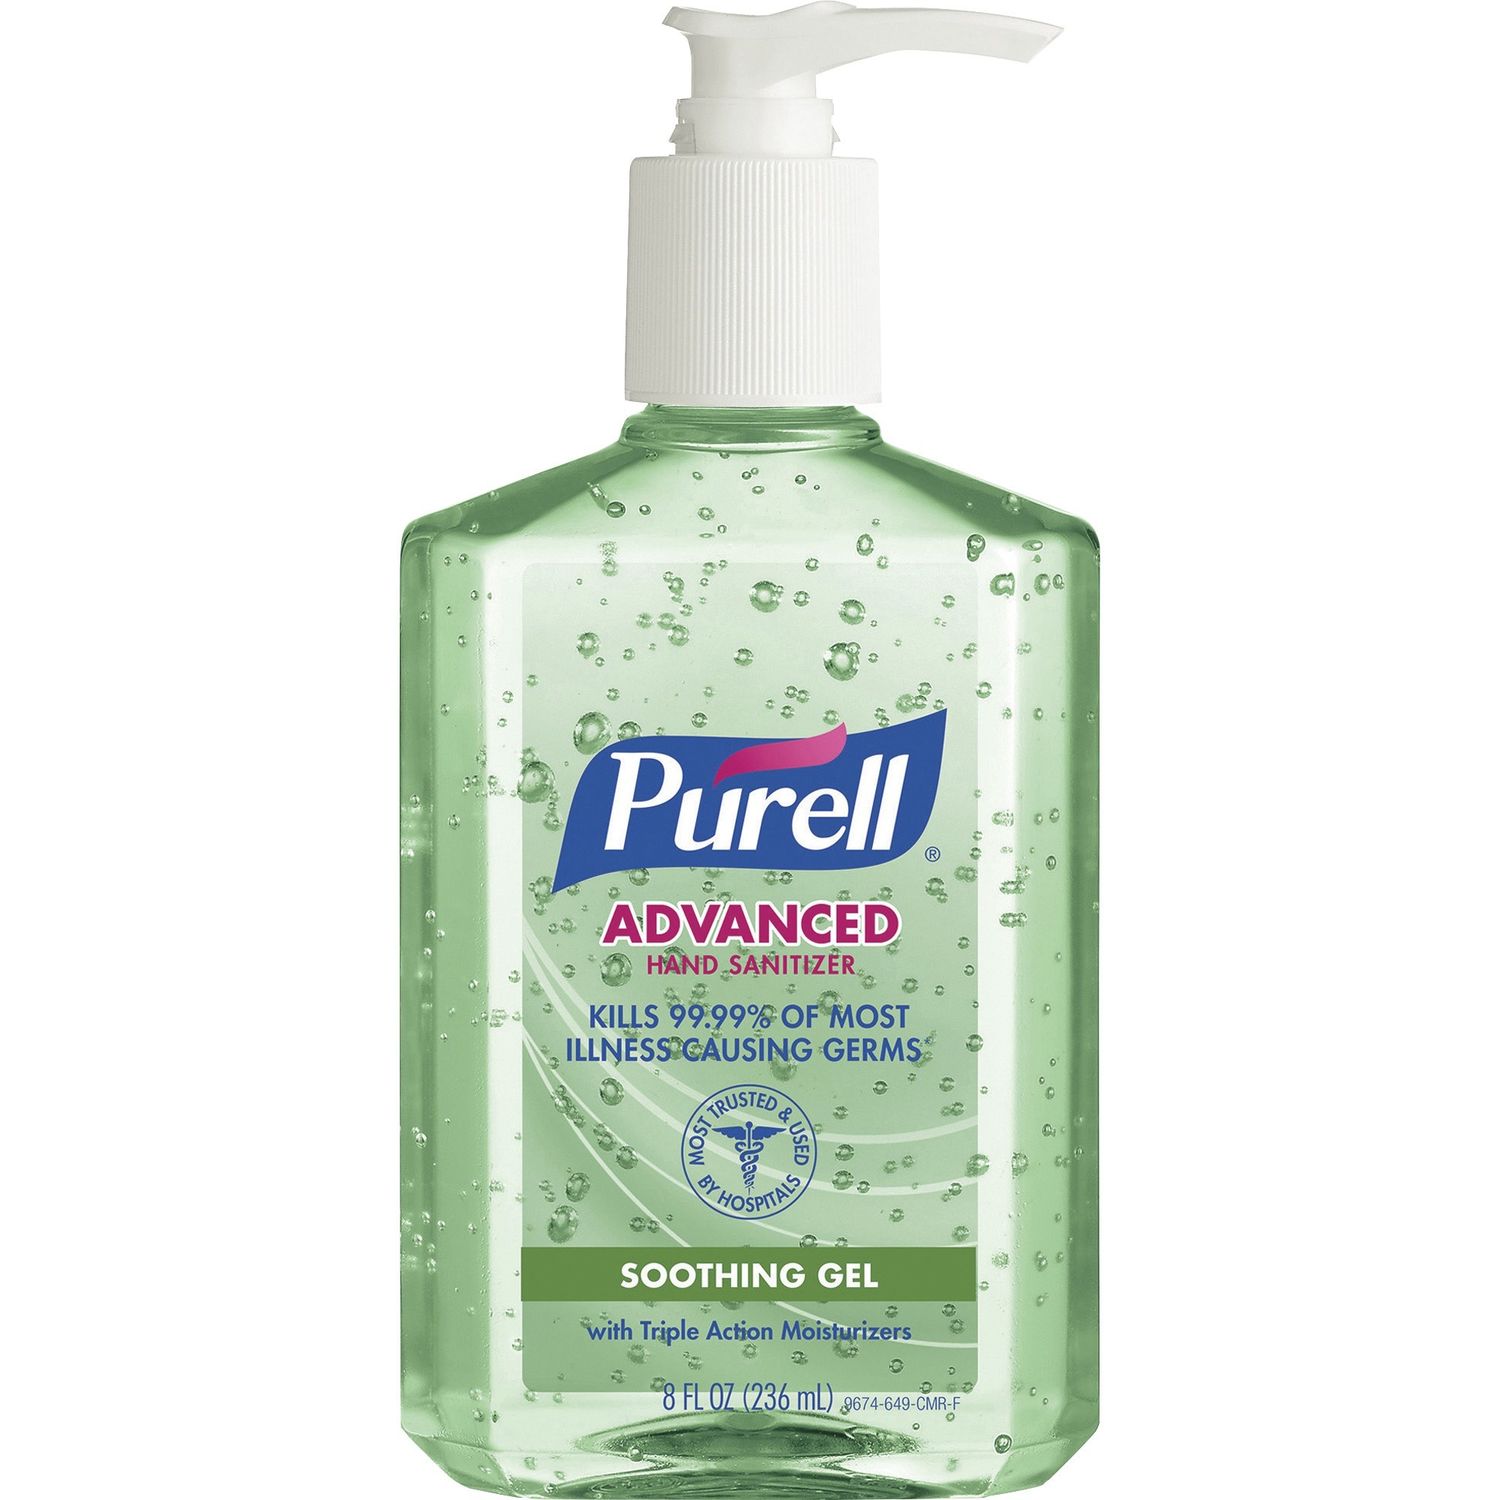 Sanitizing Gel 8 fl oz (236.6 mL), Pump Bottle Dispenser, Kill Germs, Hand, Skin, Green, Residue-free, Non-sticky, 1 Each